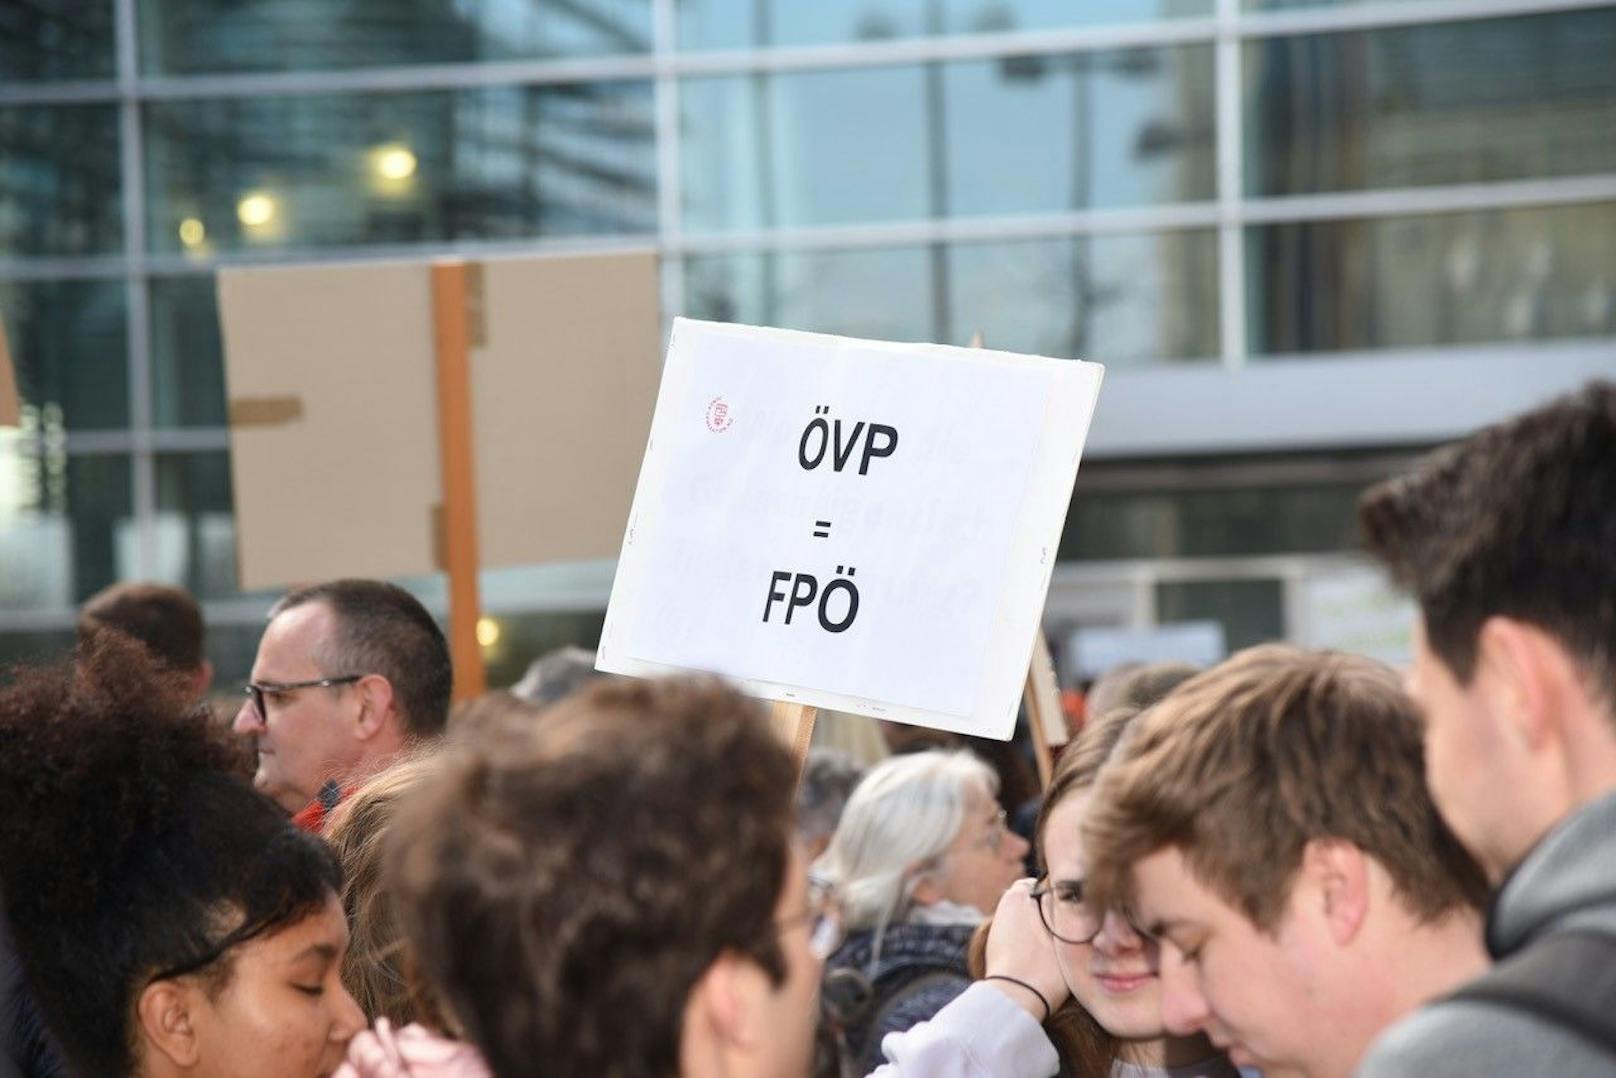 Demo vor dem Landtagsgebäude: "ÖVP = FPÖ"